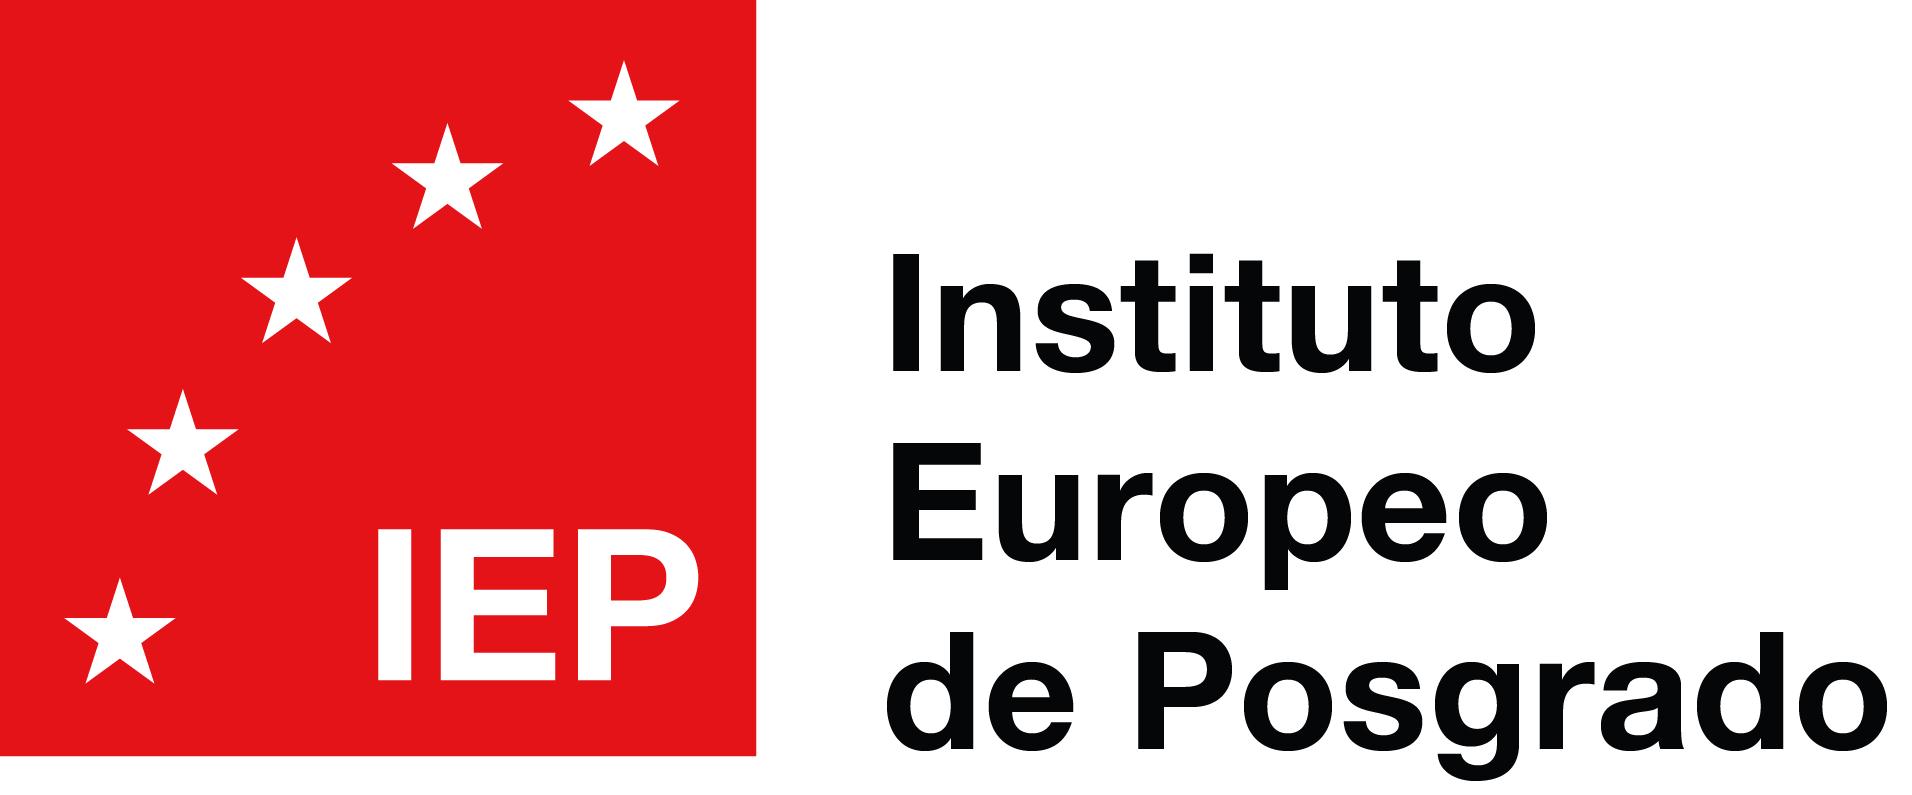 Máster Especialidad Sistemas Integrados de Gestión (HSEQ - IEP - Instituto Europeo de Posgrado